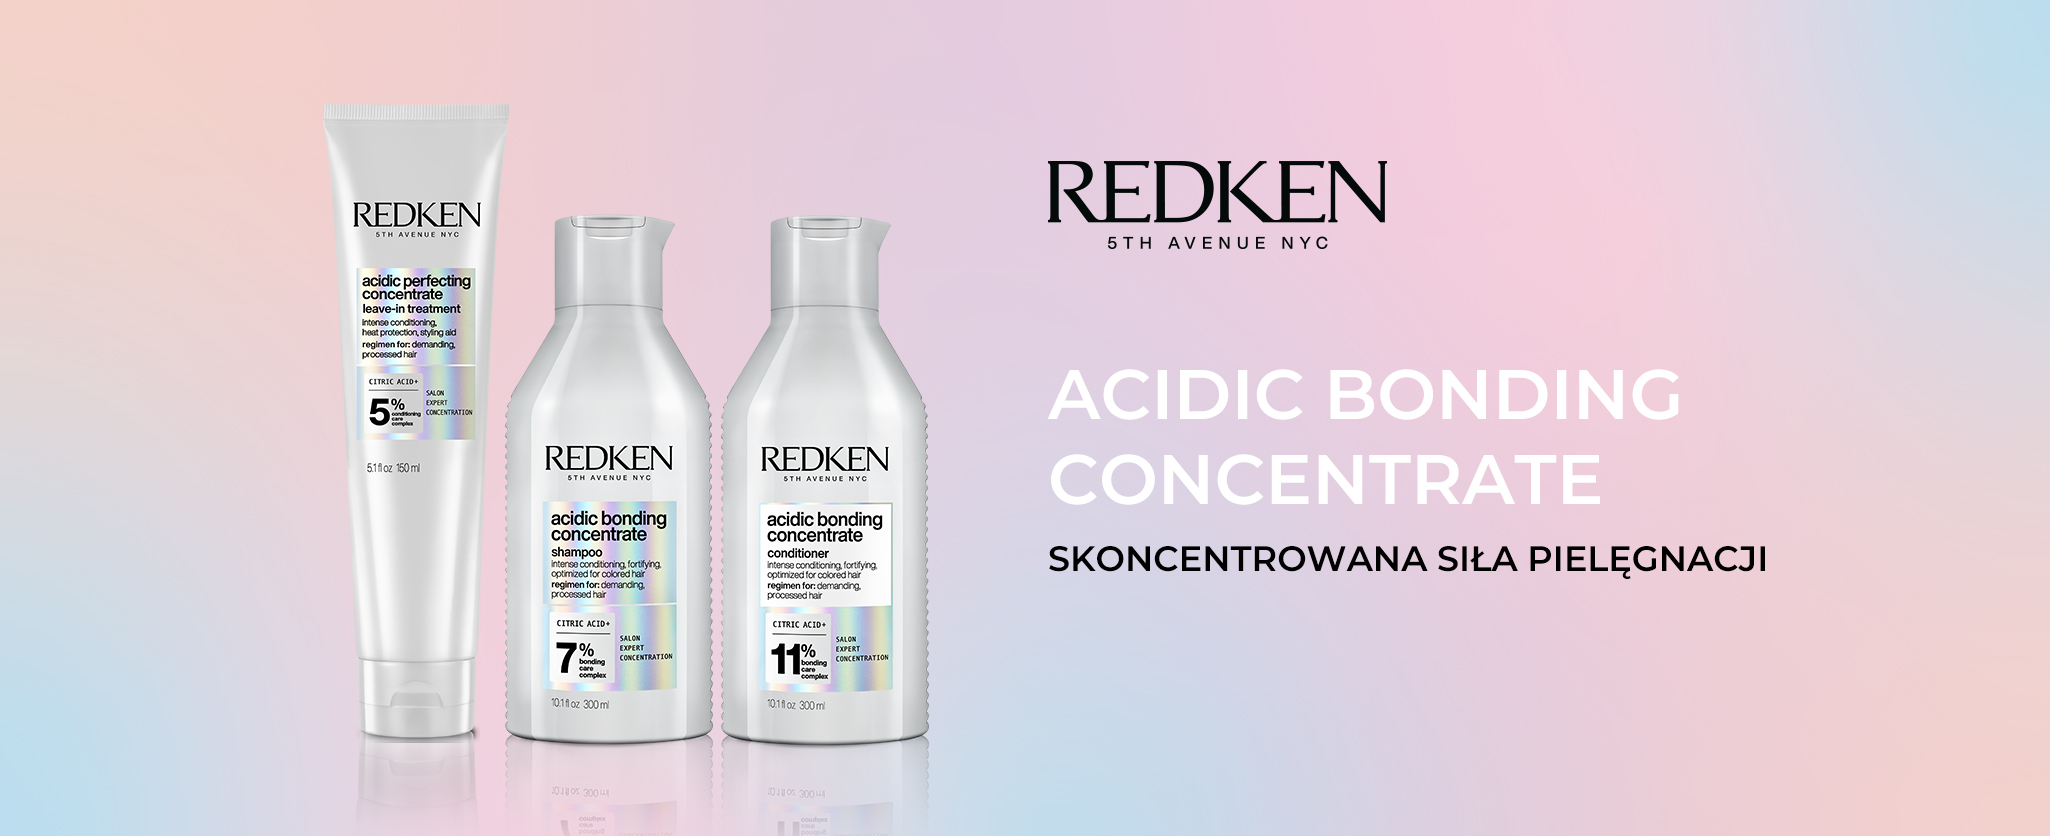 Redken Acidic Bonding